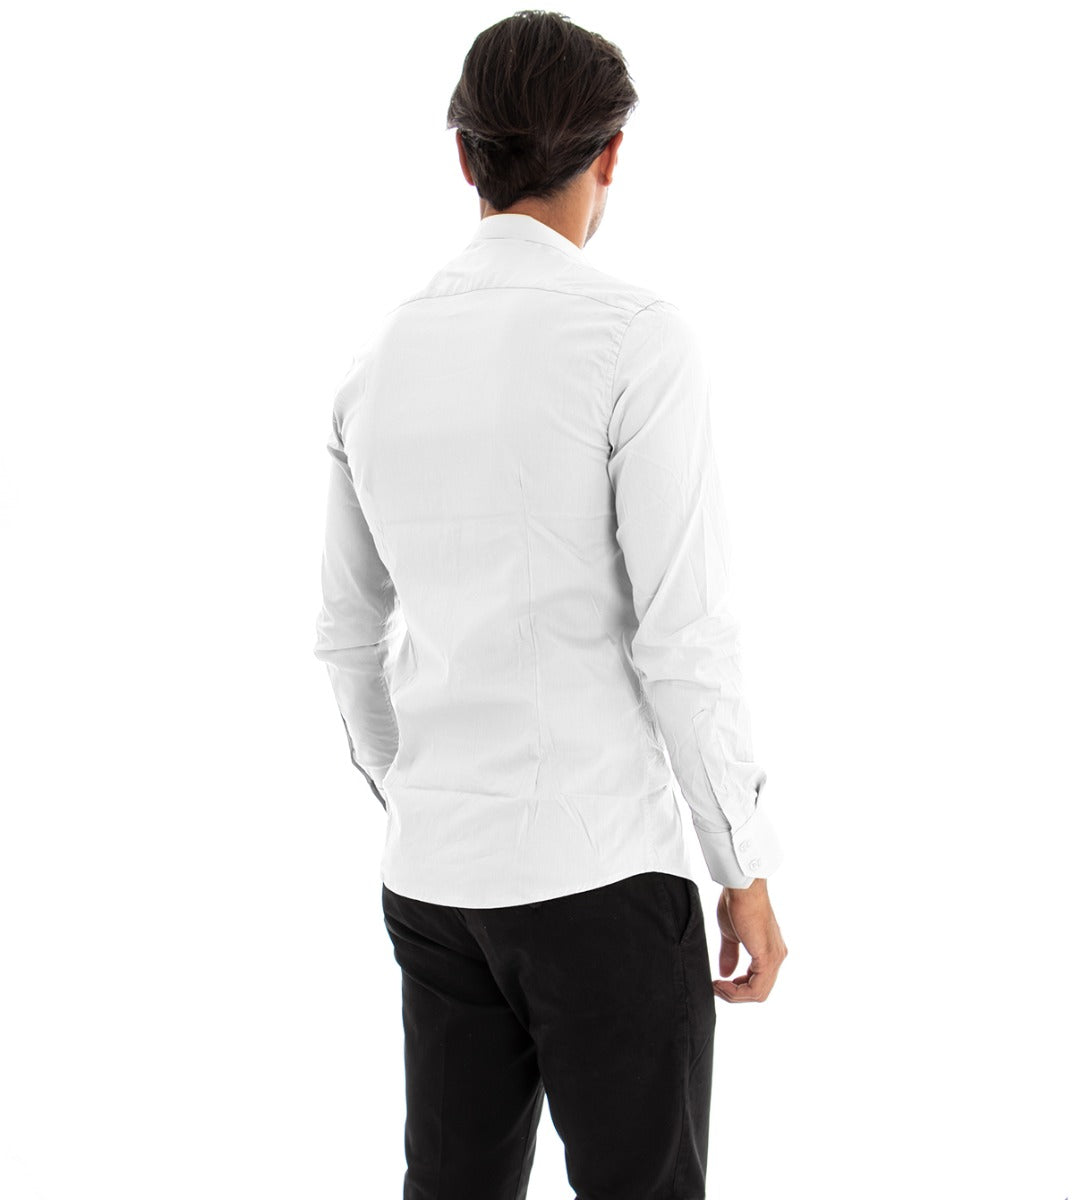 Camicia Uomo Collo Coreano Manica Lunga Slim Fit Basic Casual Cotone Bianco GIOSAL-C1821A